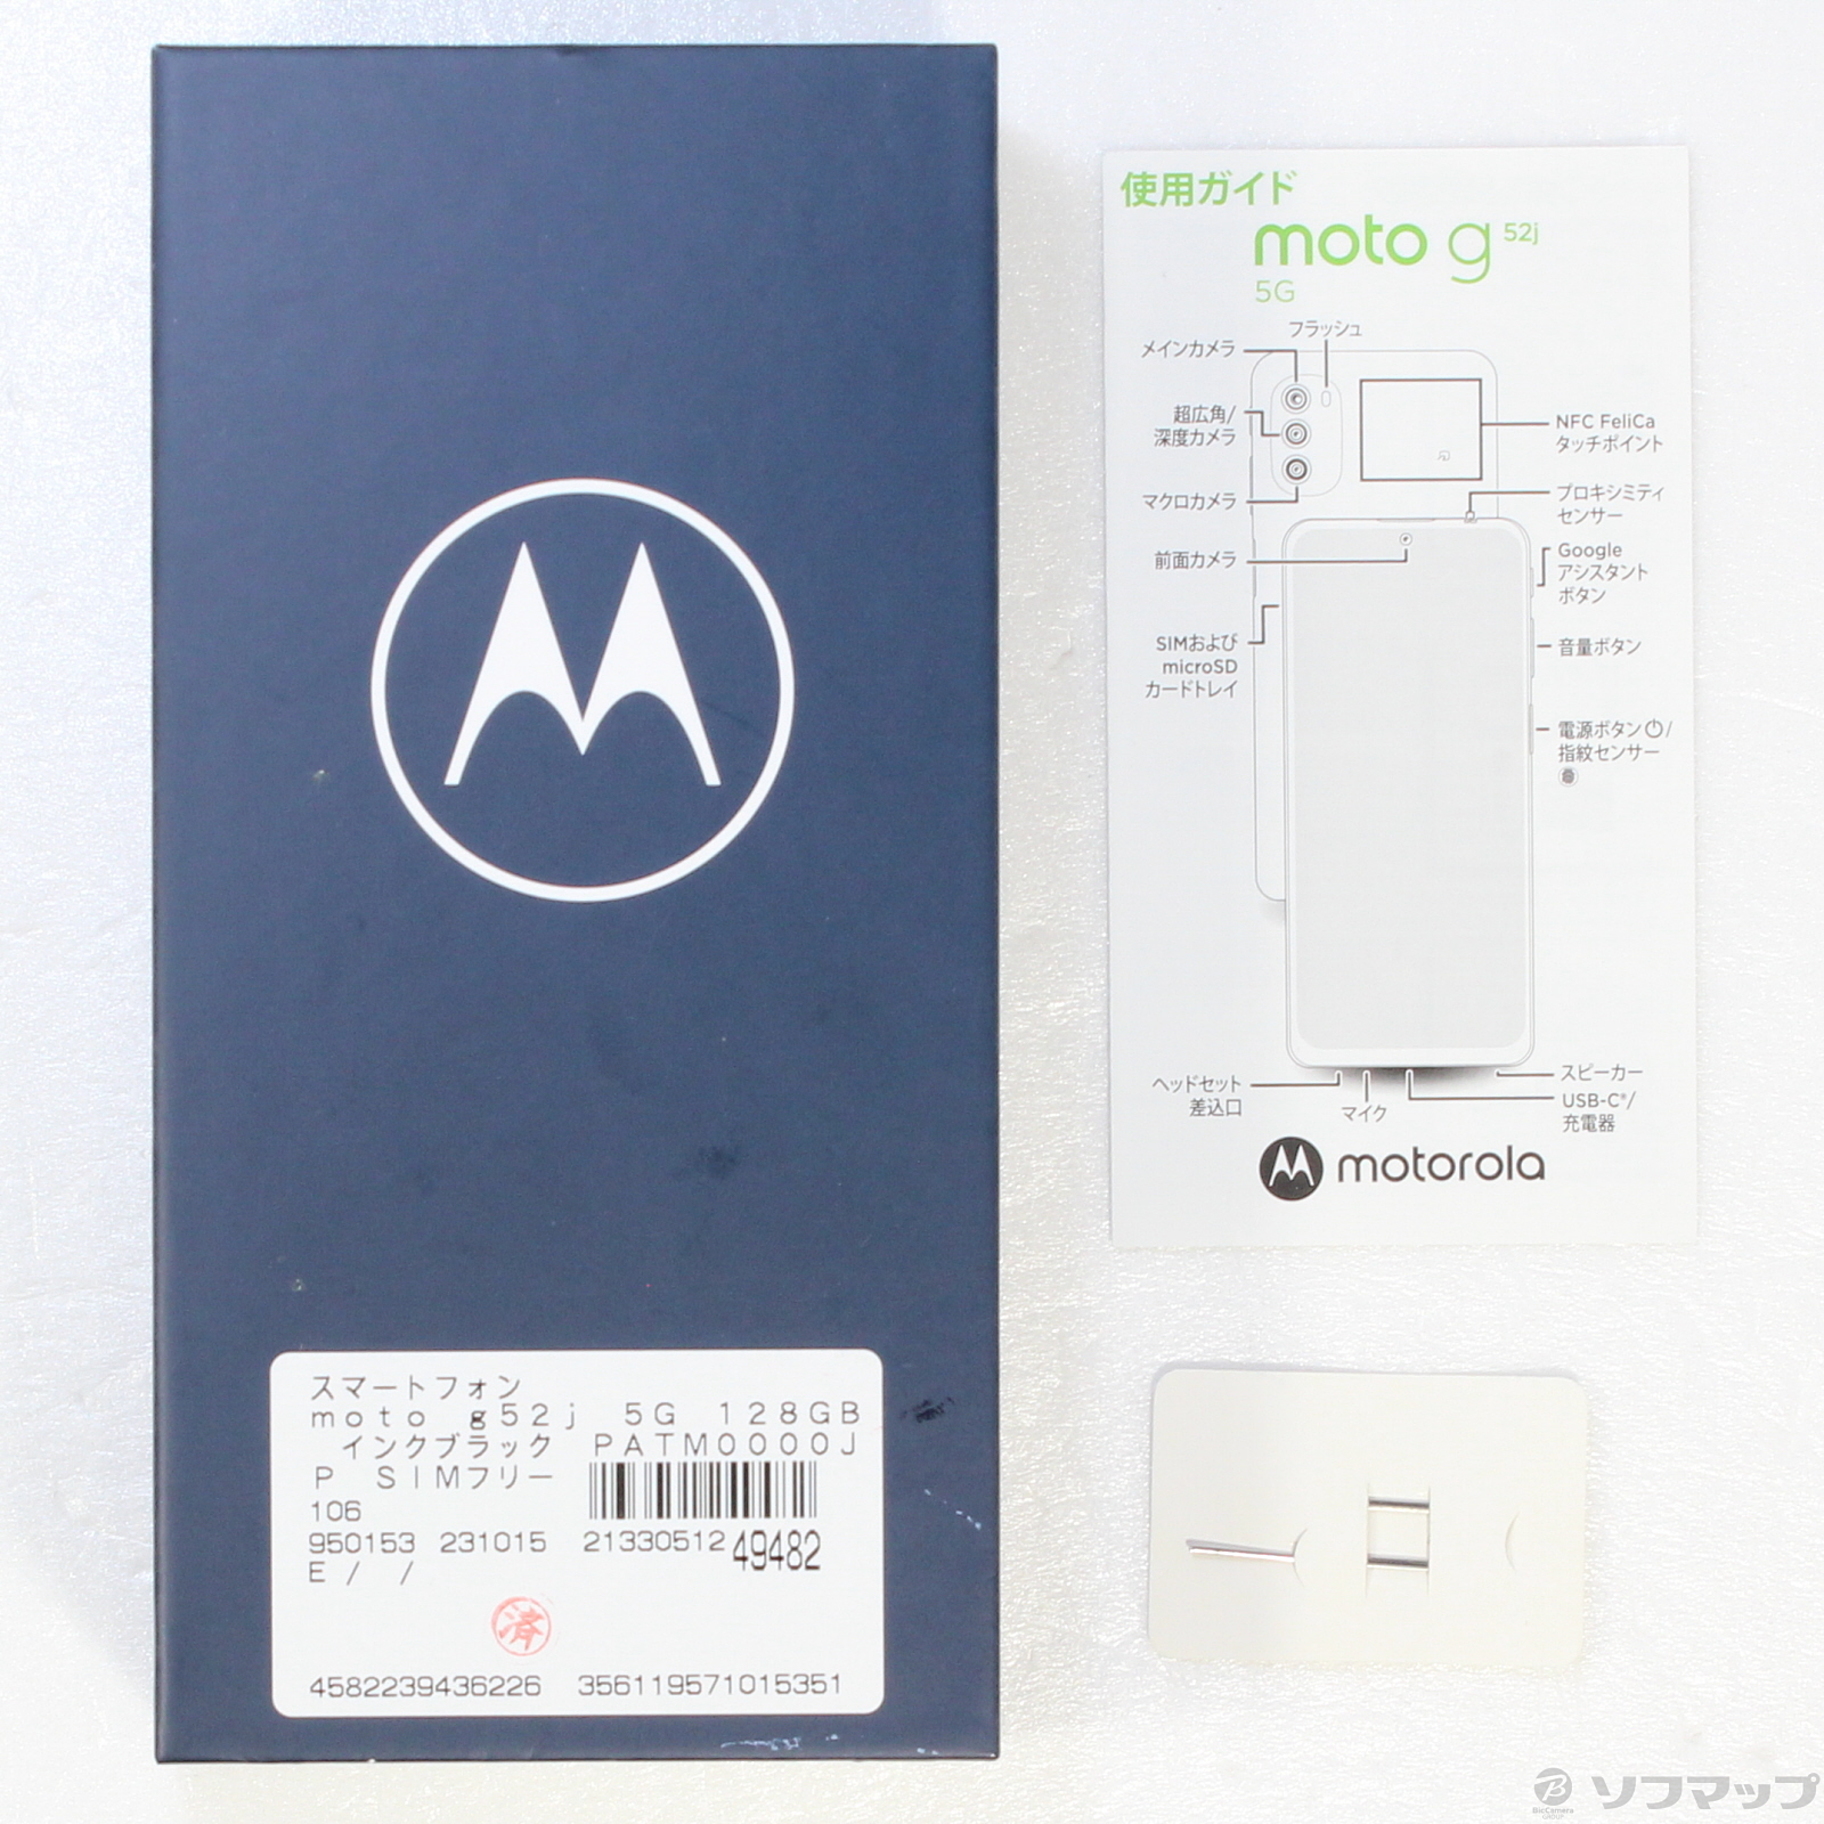 防水Bluetooth対応Motorola モトローラ moto g52j インクブラック SIM